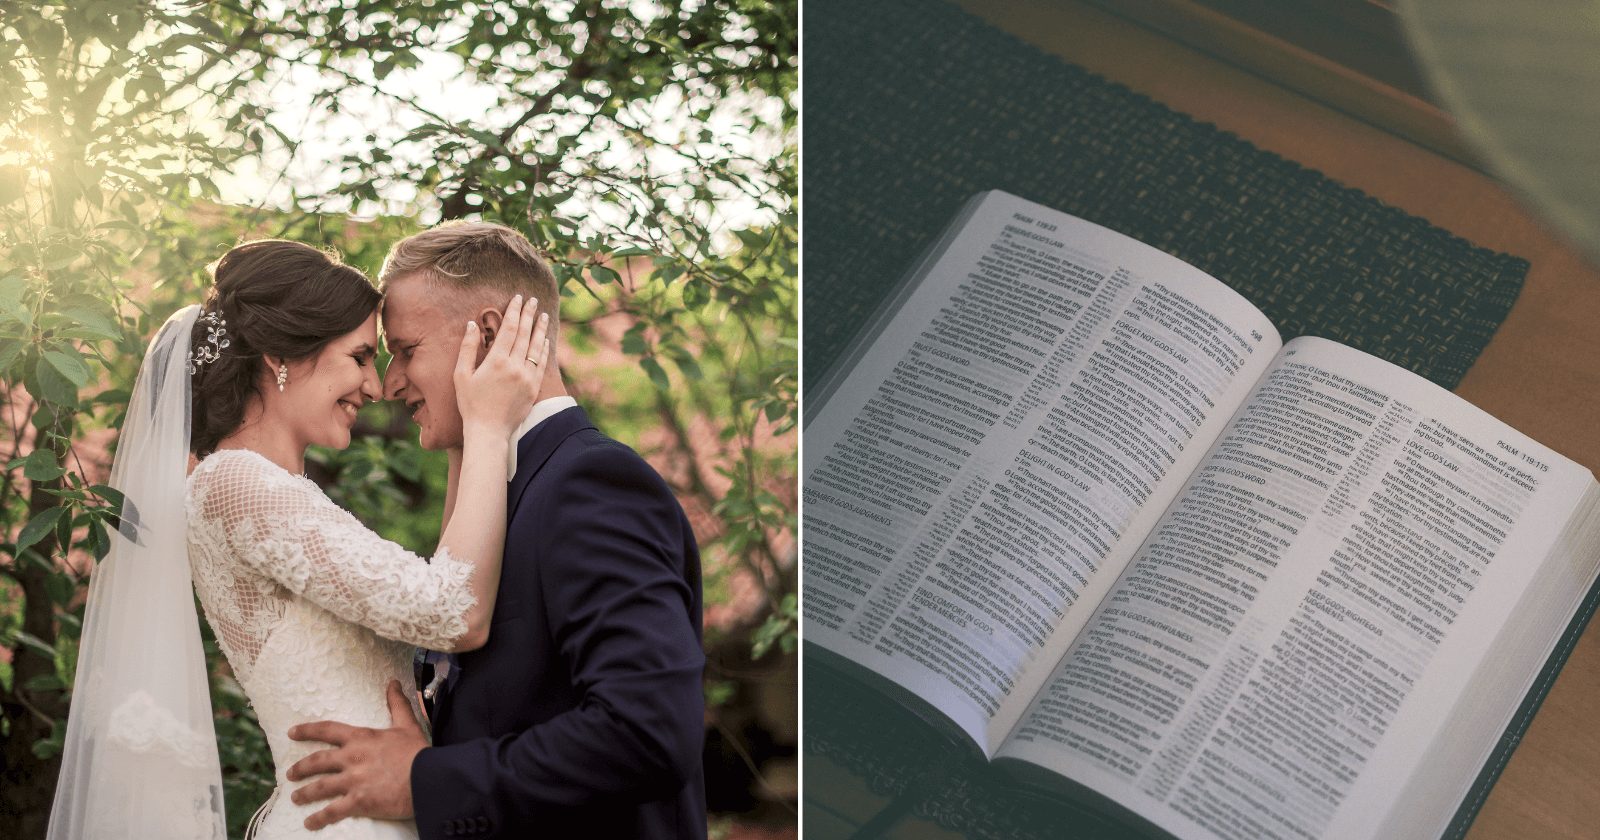 Apenas um versículo conseguirá trazer uma enorme benção para o seu casamento; leia-o